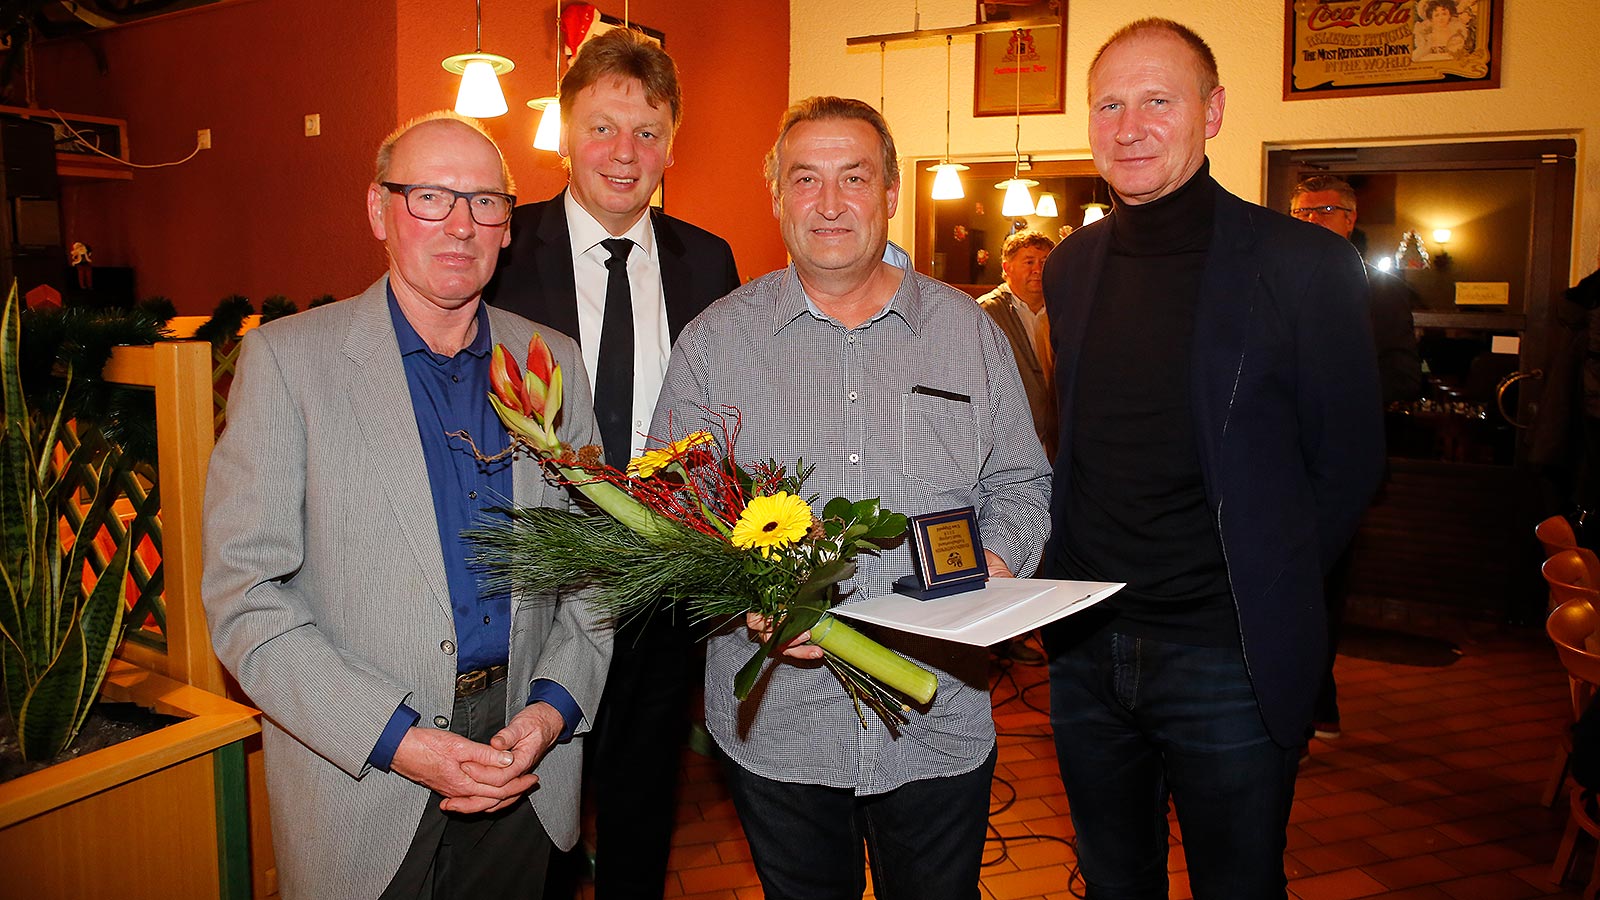 Erhielt die Ehrenamtsmedaille: Uwe Dippold vom VfB Zwenkau. (Foto: Dirk Knofe/Sportbuzzer)